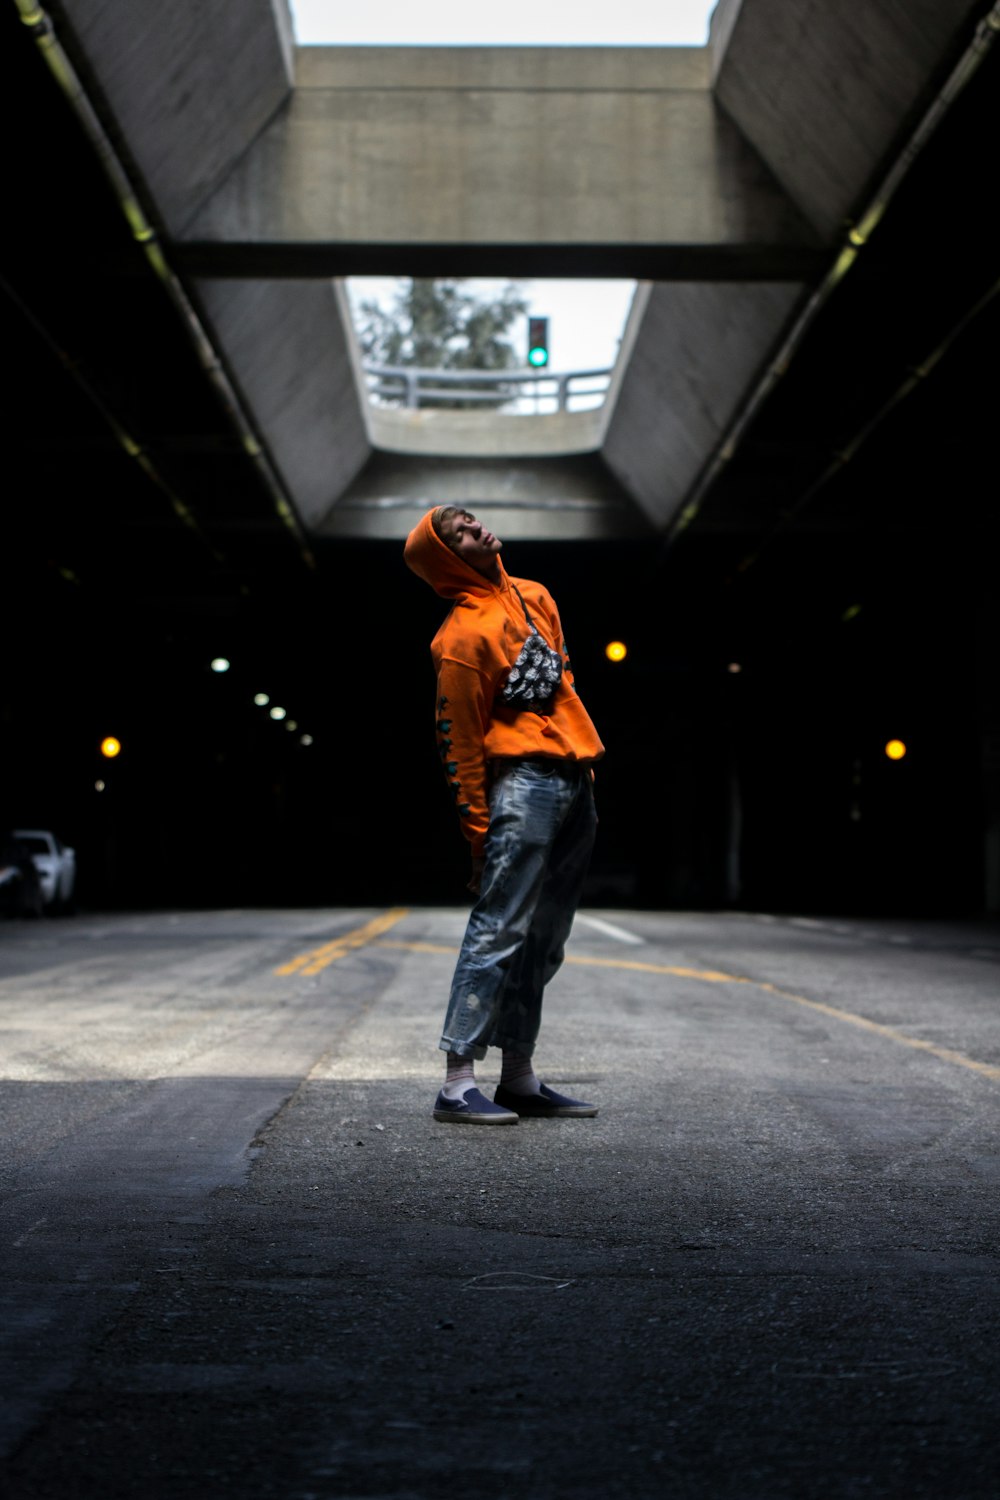 Mann trägt orangefarbenen Kapuzenpullover